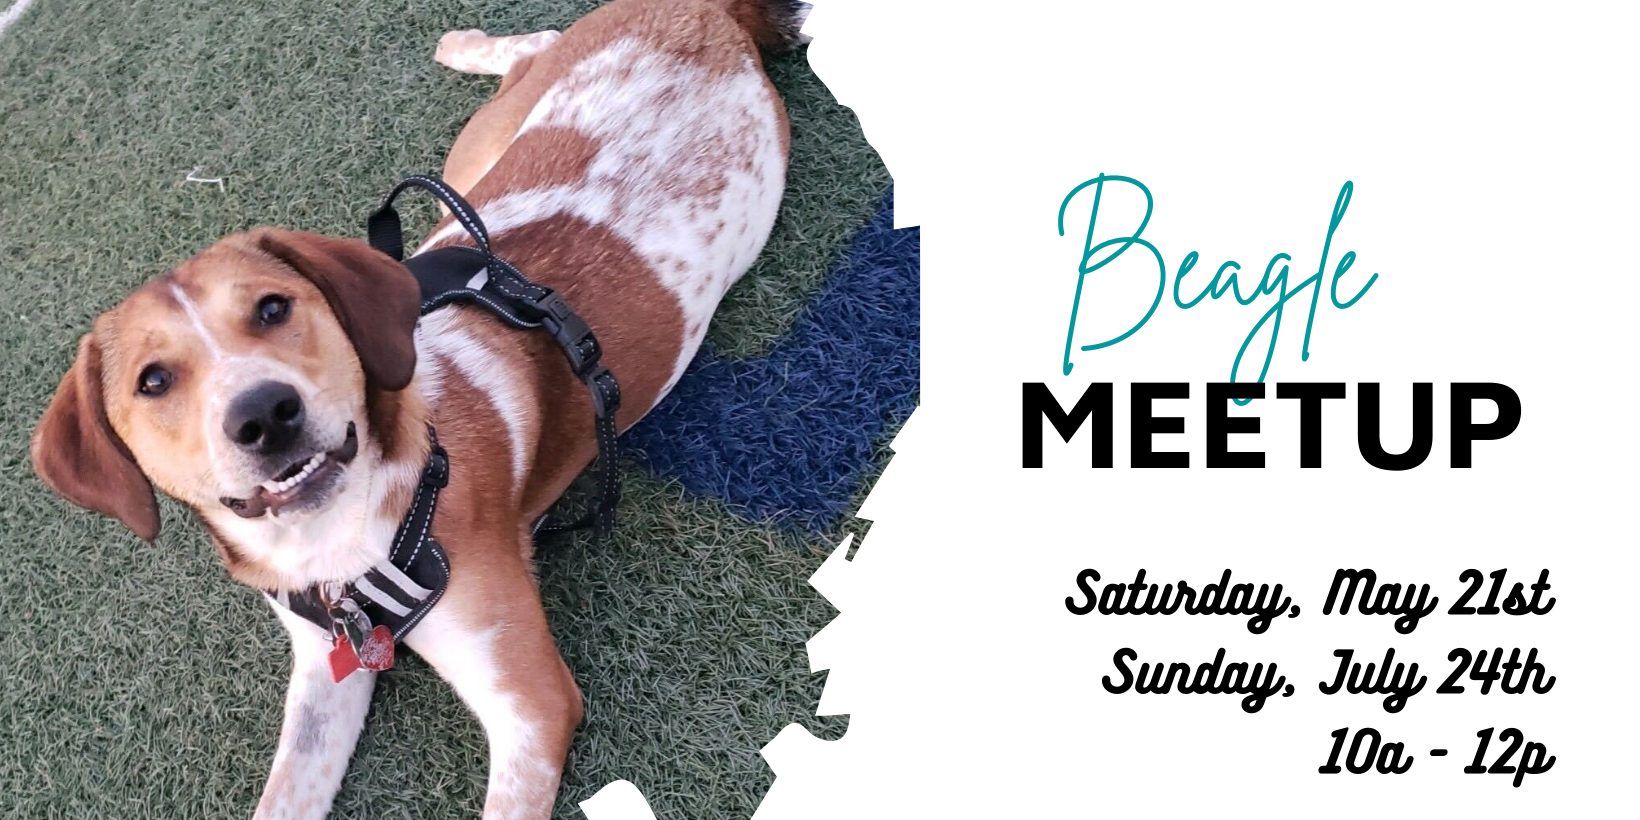 Beagle Meet-Up at Omaha Dog Bar promotional image